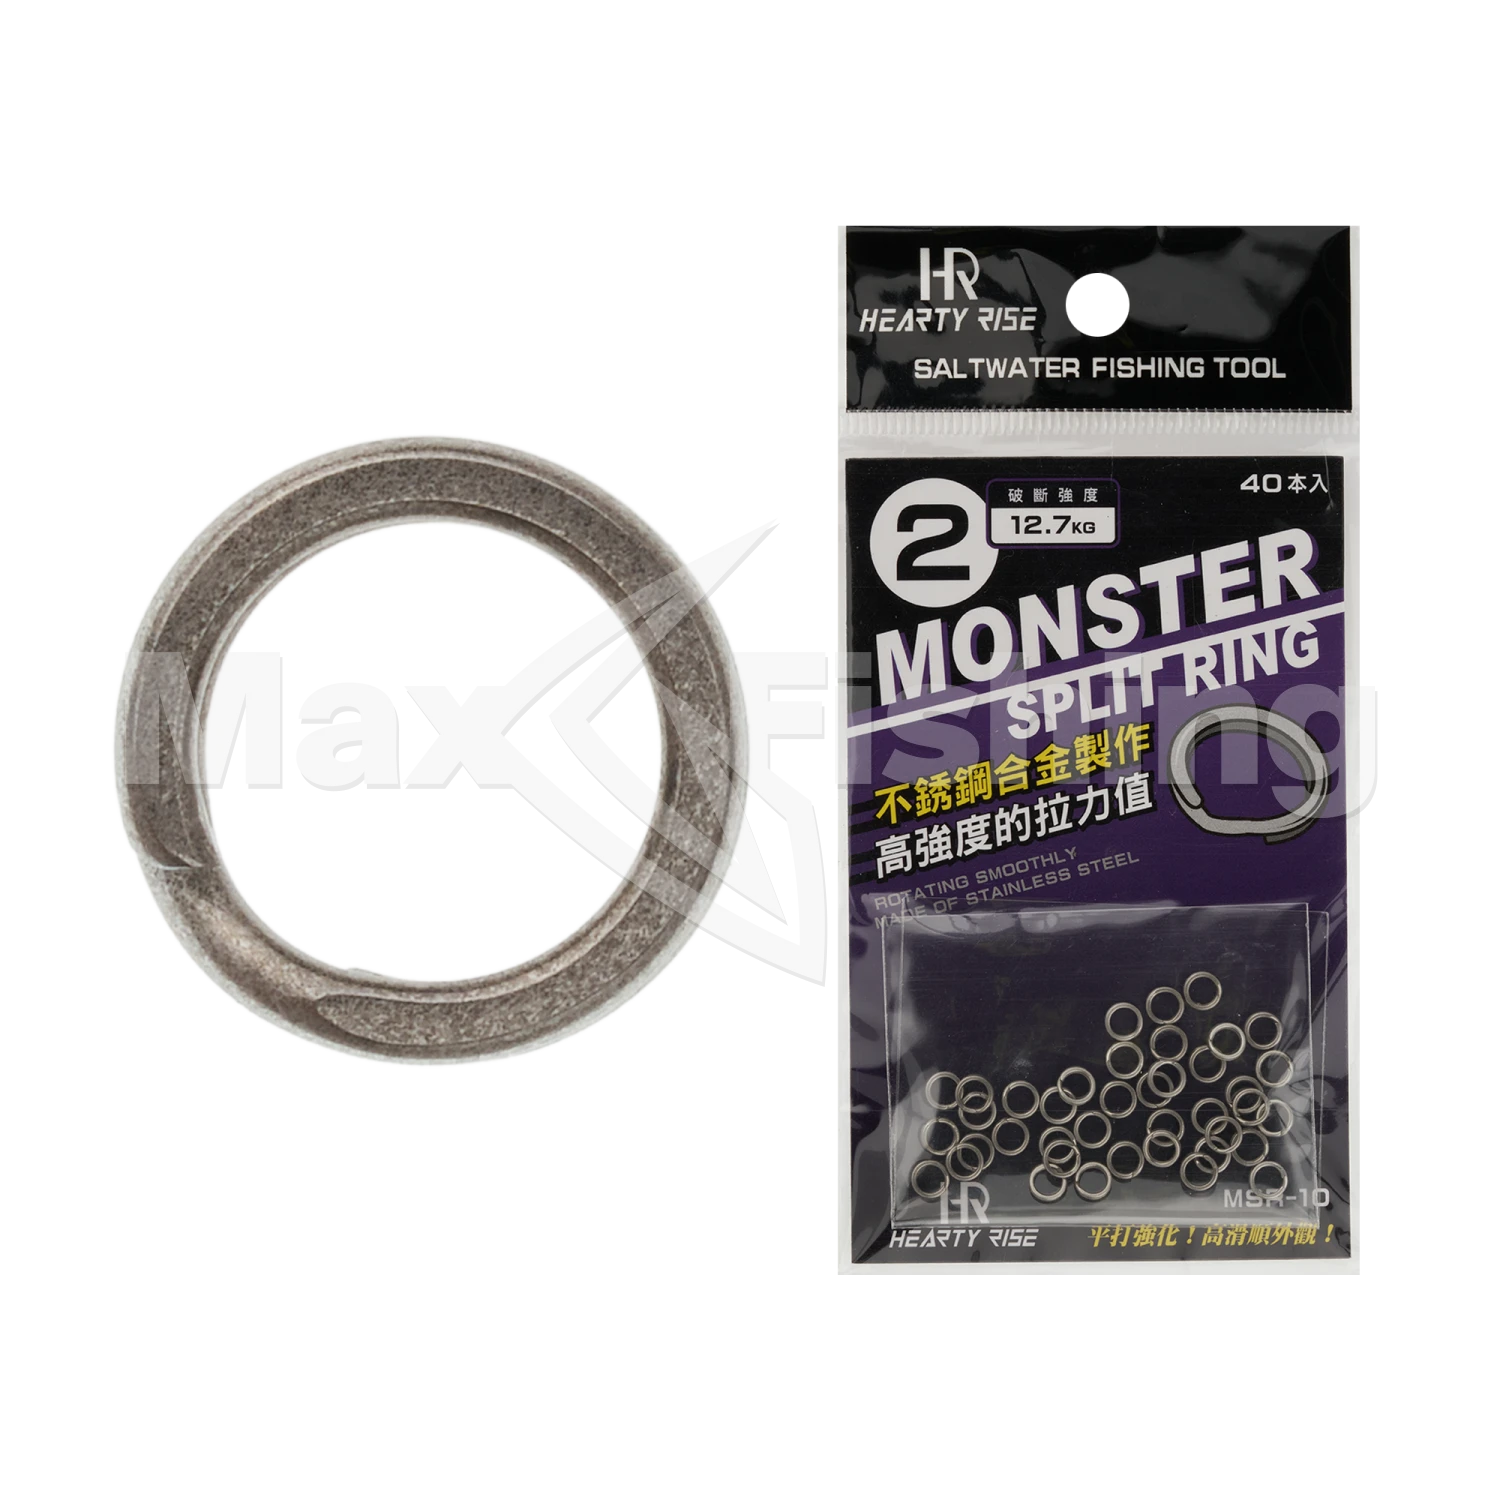 Кольцо заводное Hearty Rise Monster Game Split Ring MSR-10 #2